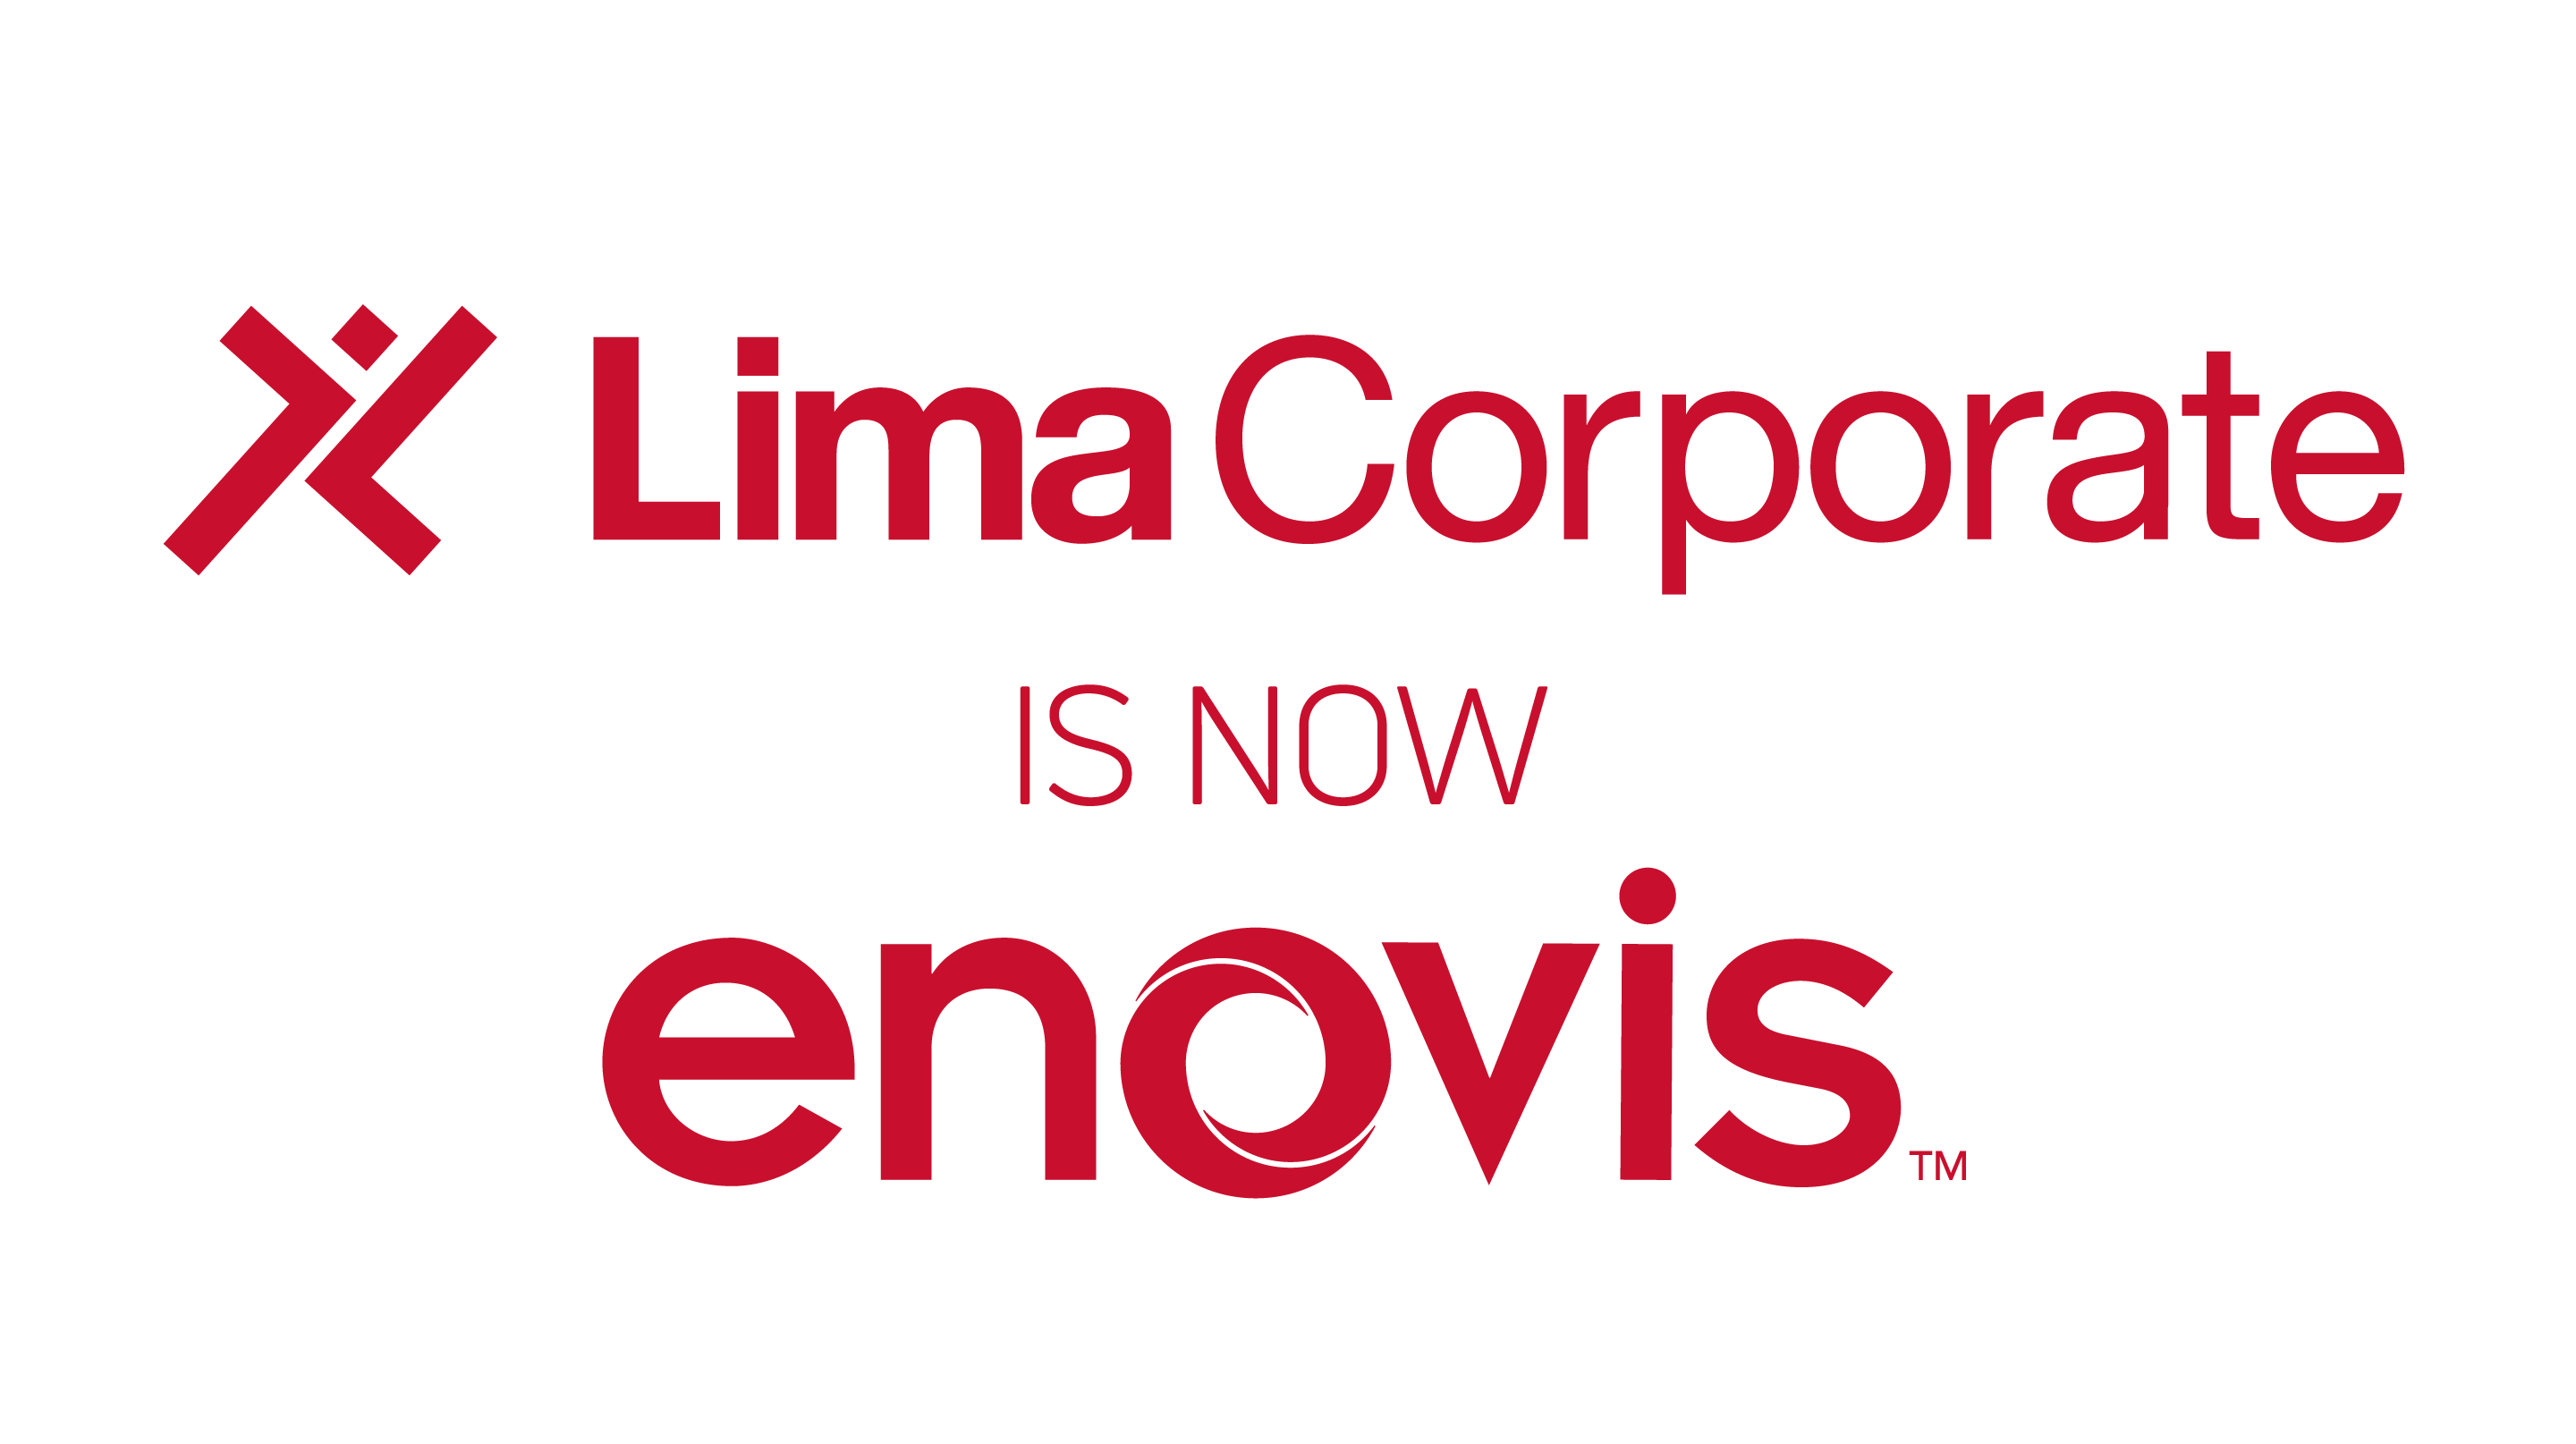 Lima Corporate